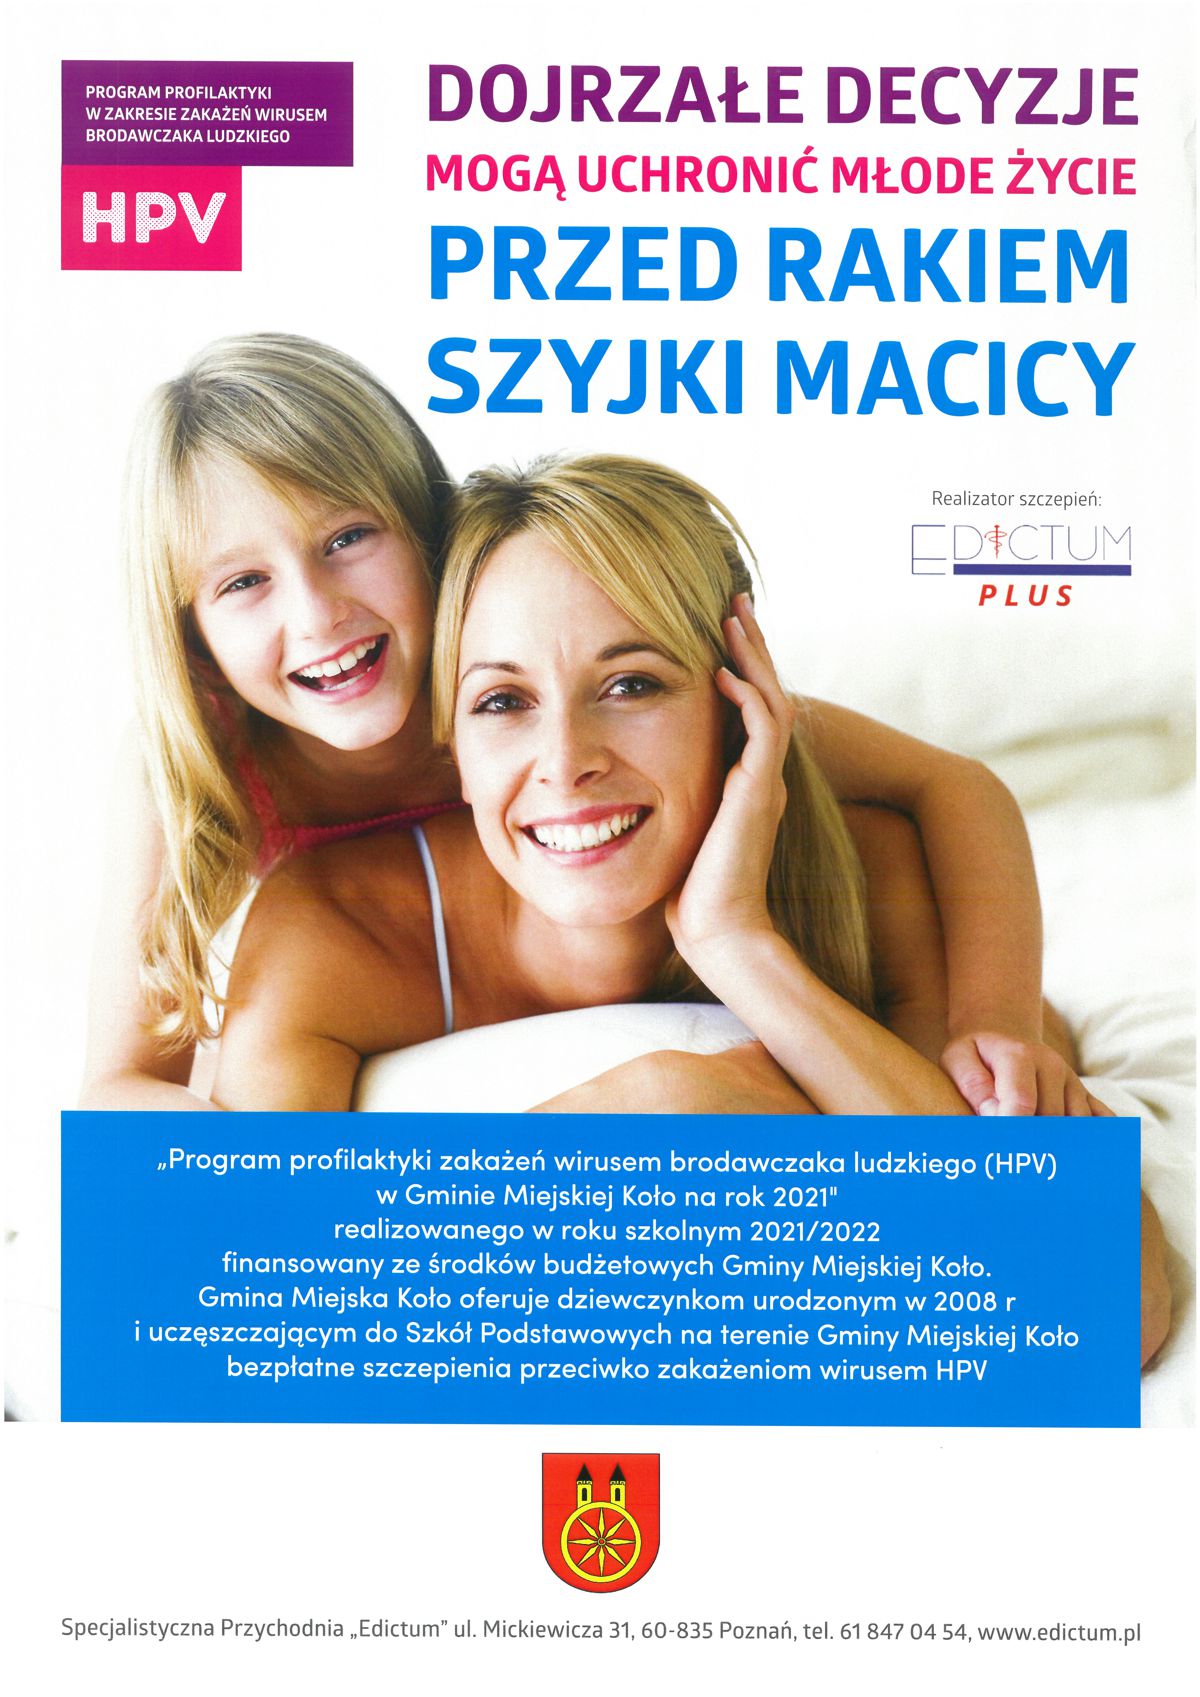 Plakat informujący o Akcji informacyjno-edukacyjnej nt. szczepień przeciwko HPV, tekst pod plakatem.